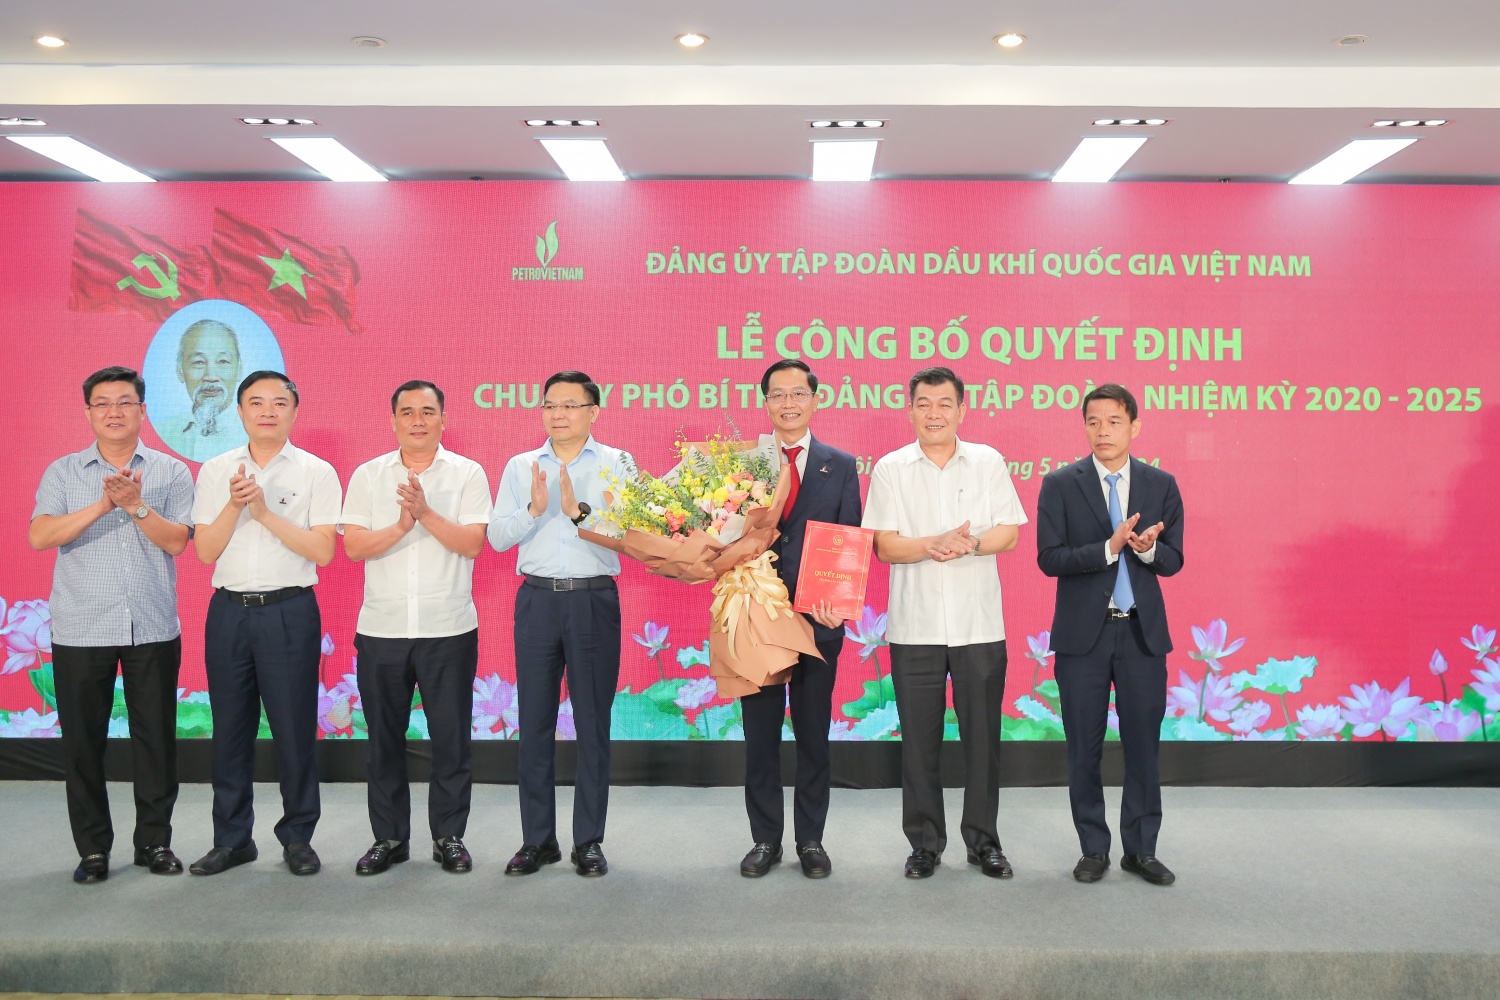 Đảng ủy Tập đoàn Dầu khí Quốc gia Việt Nam công bố và trao quyết định Phó Bí thư Đảng ủy Tập đoàn đối với đồng chí Trần Quang Dũng”